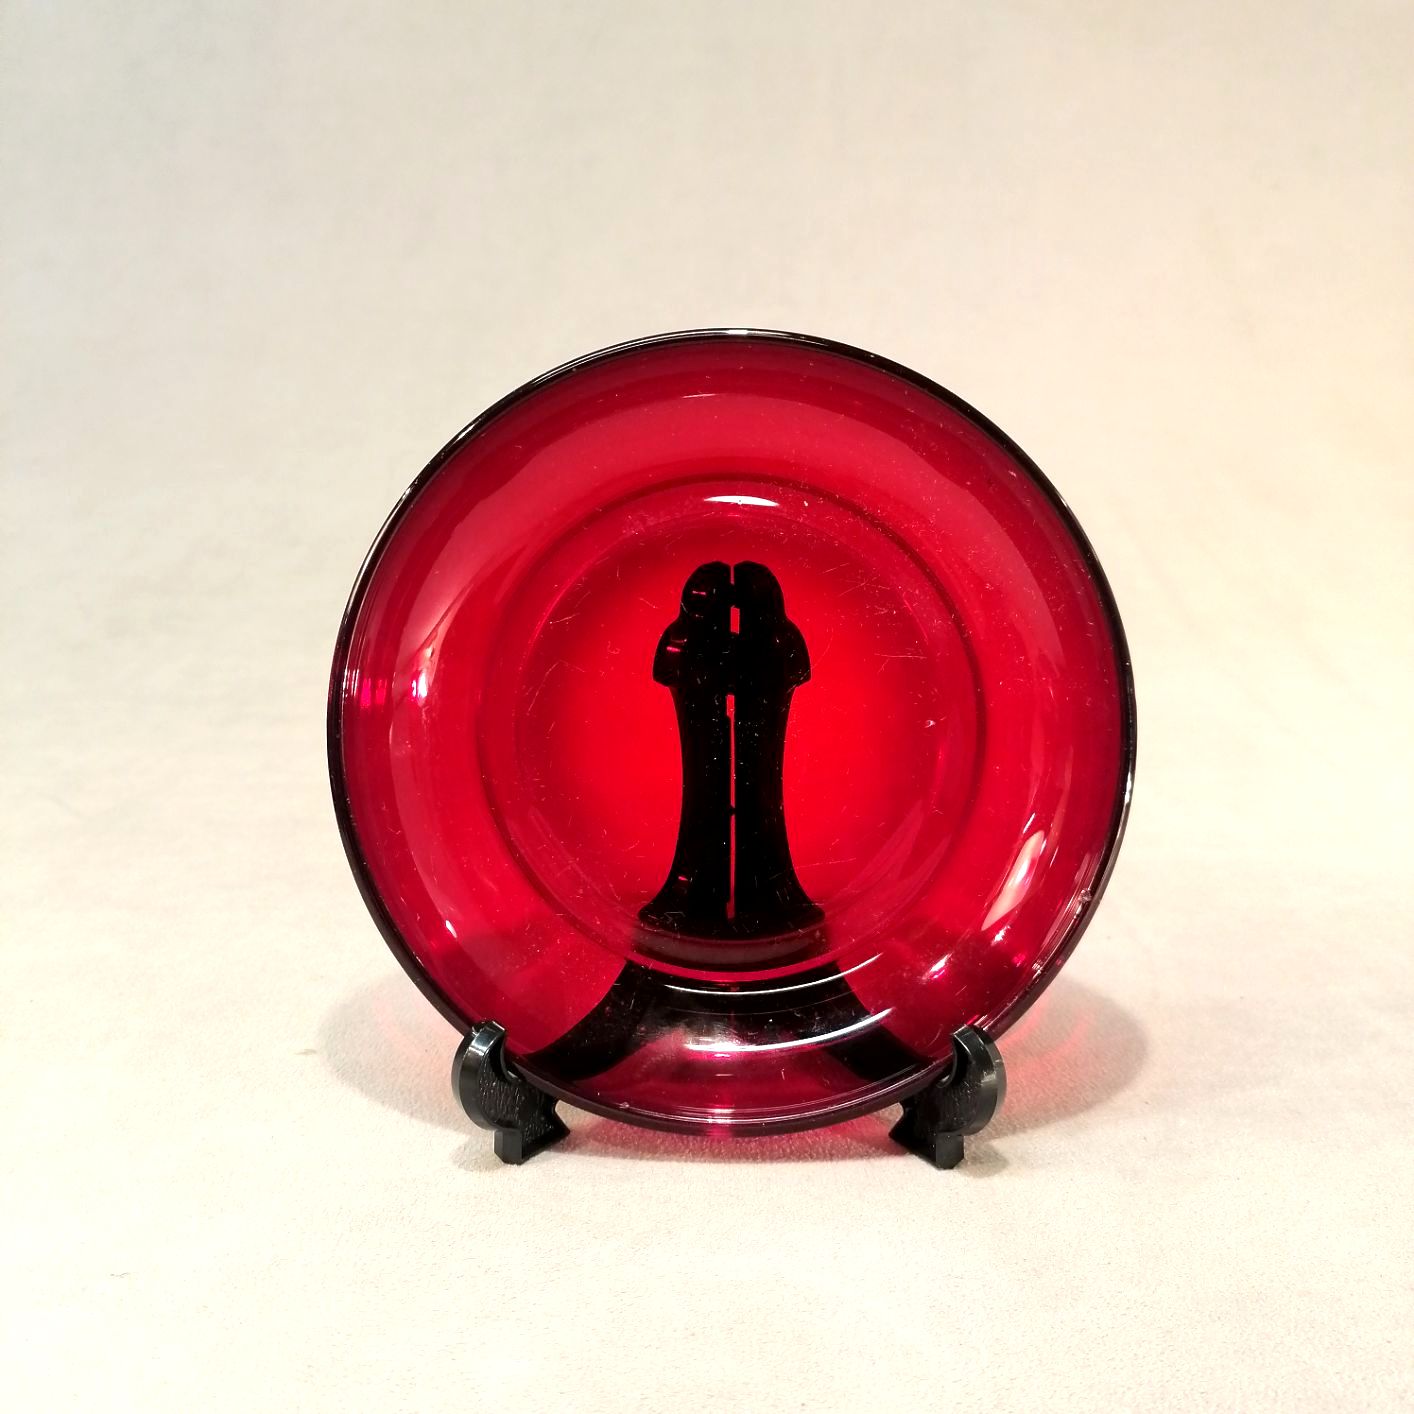 Riihimäen lasi punainen lasilautanen halkaisija n.14cm design Kaj Franck hinta 35eur.